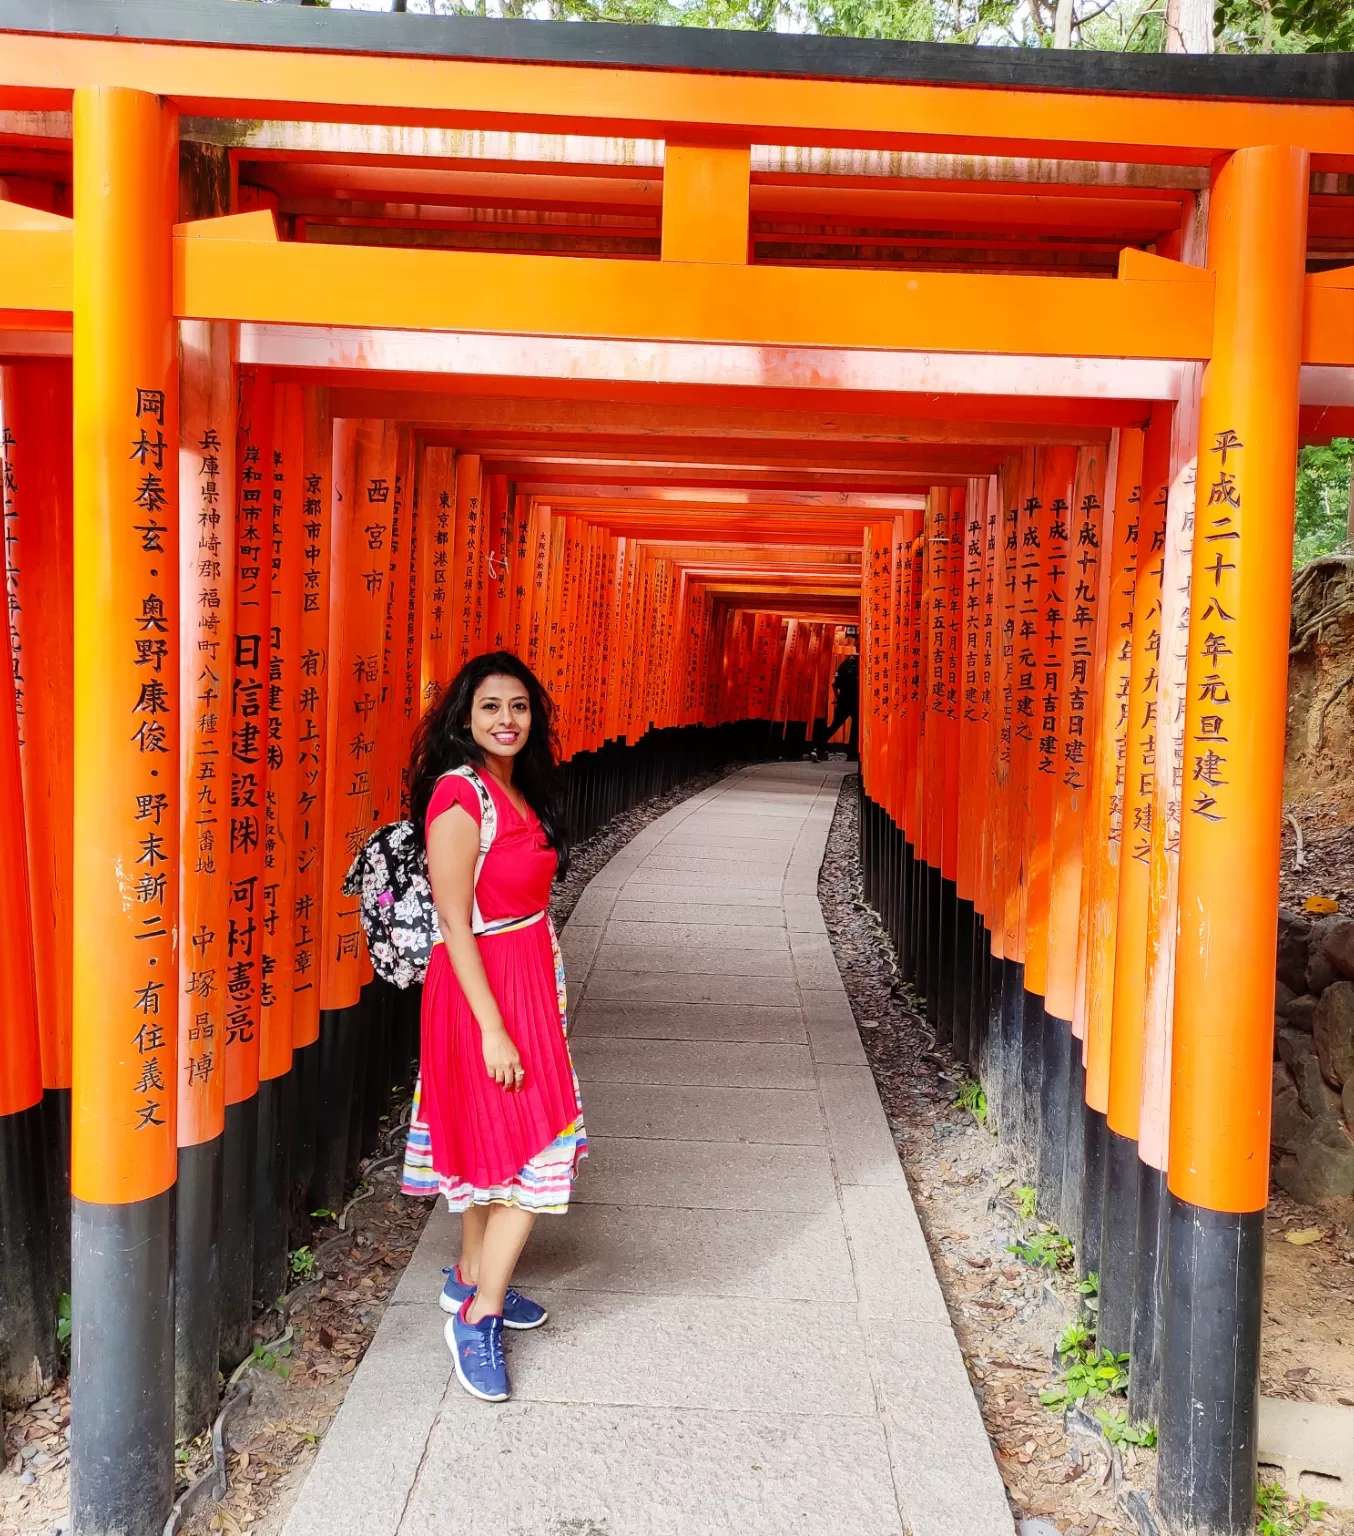 Photo of Fushimi Inari Taisha Shrine Senbontorii By Neetha kopparam